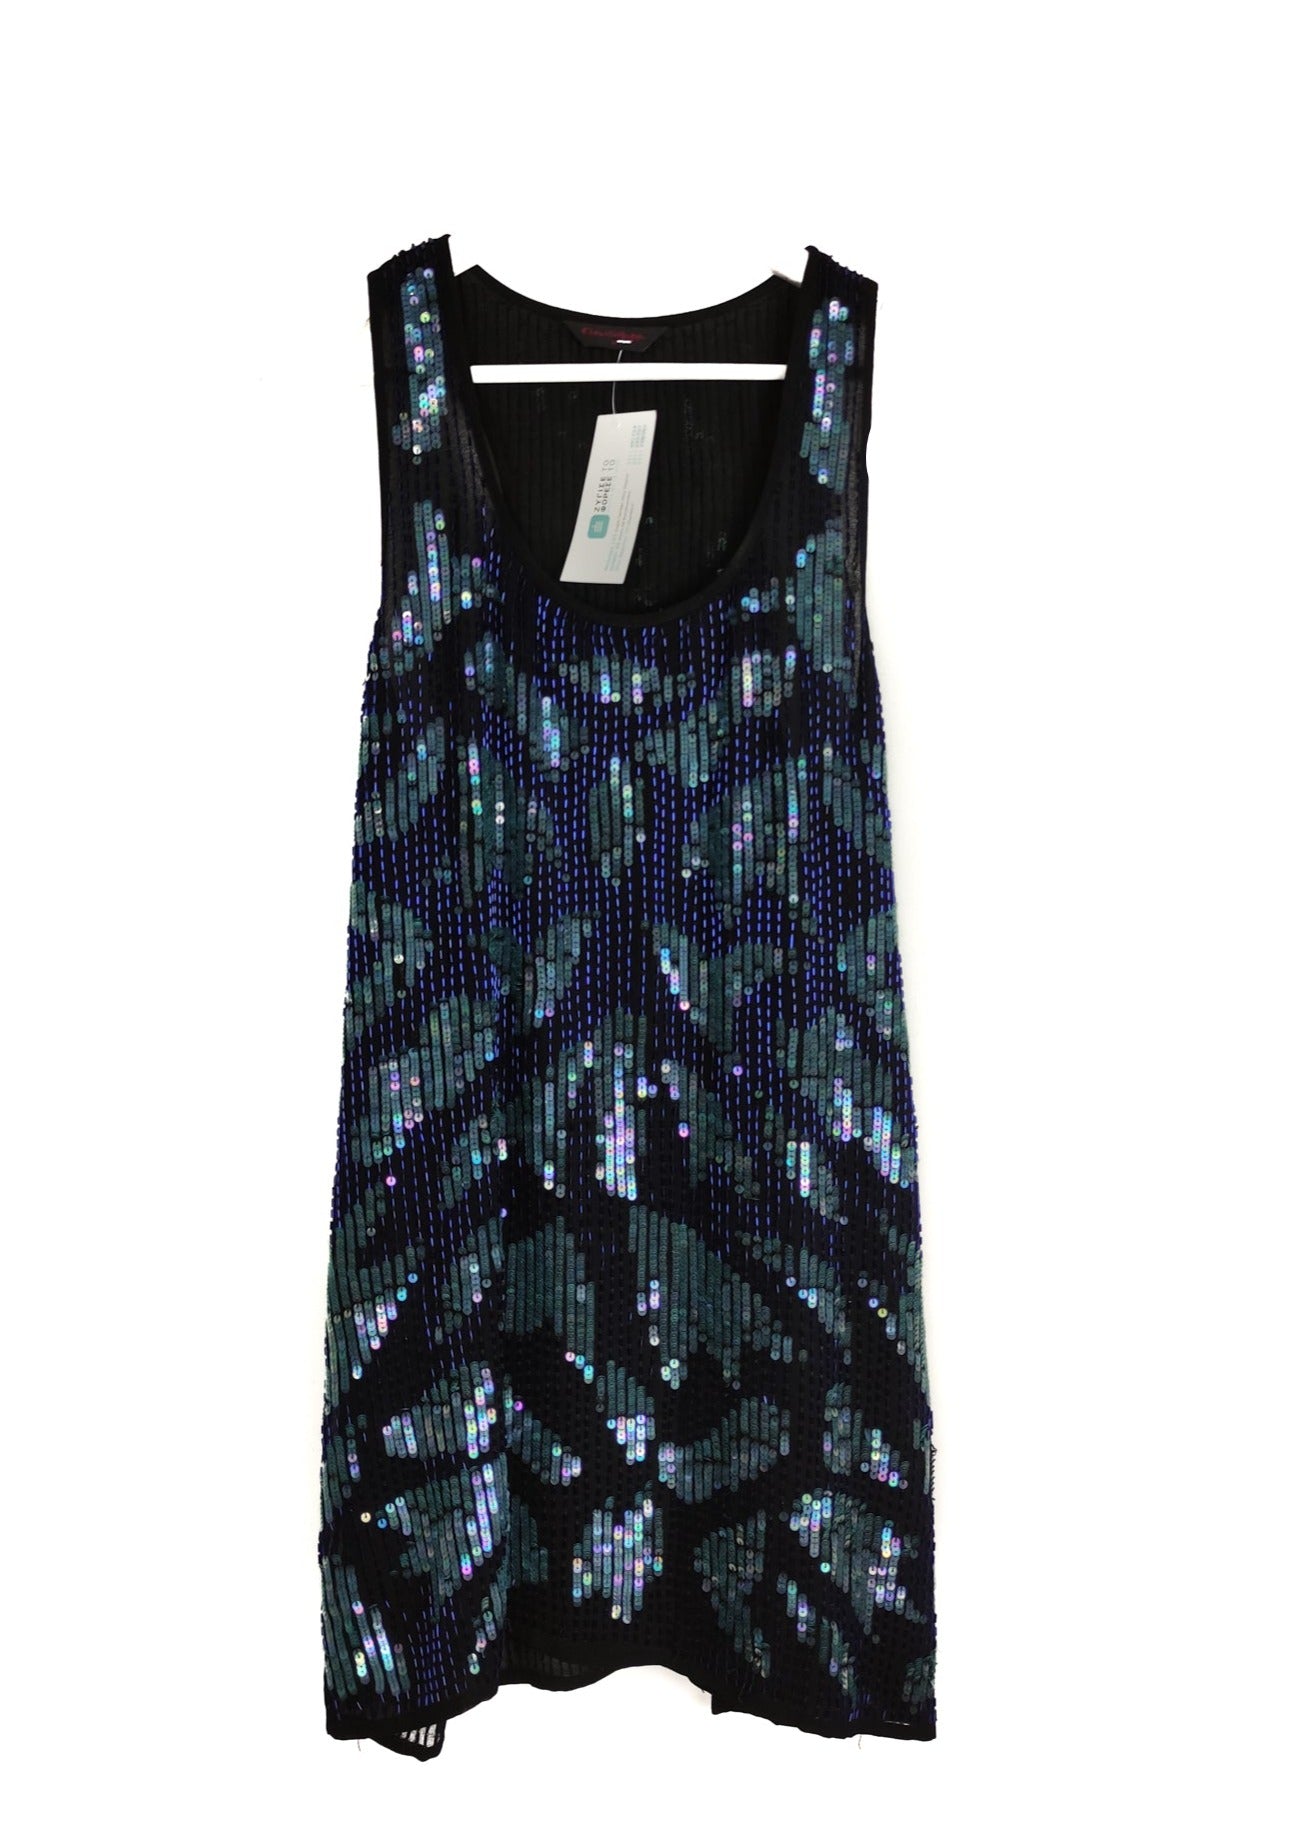 Μίνι, Βραδινό Cocktail Φόρεμα MISS SELFRIDGE σε Μαύρο χρώμα με Μπλε Παγιέτες και Πέρλες (Small)